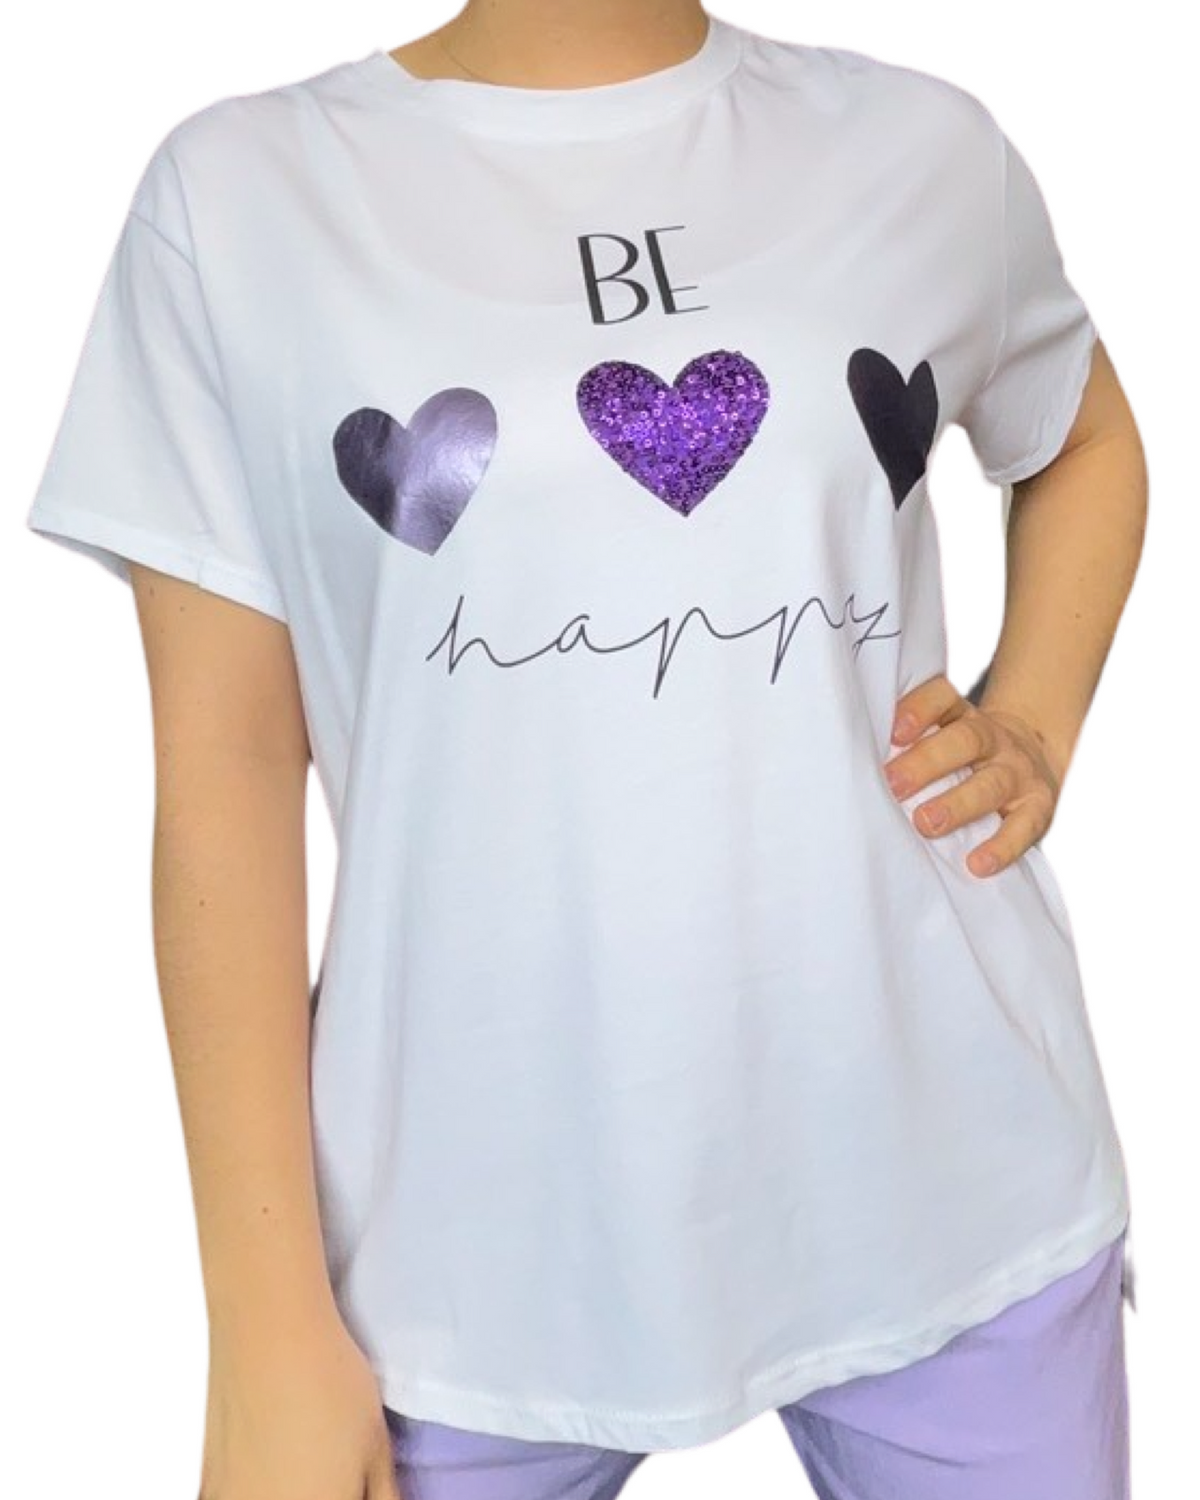 T-shirt blanc pour femme avec imprimé de trois cœurs avec bermuda lilas.